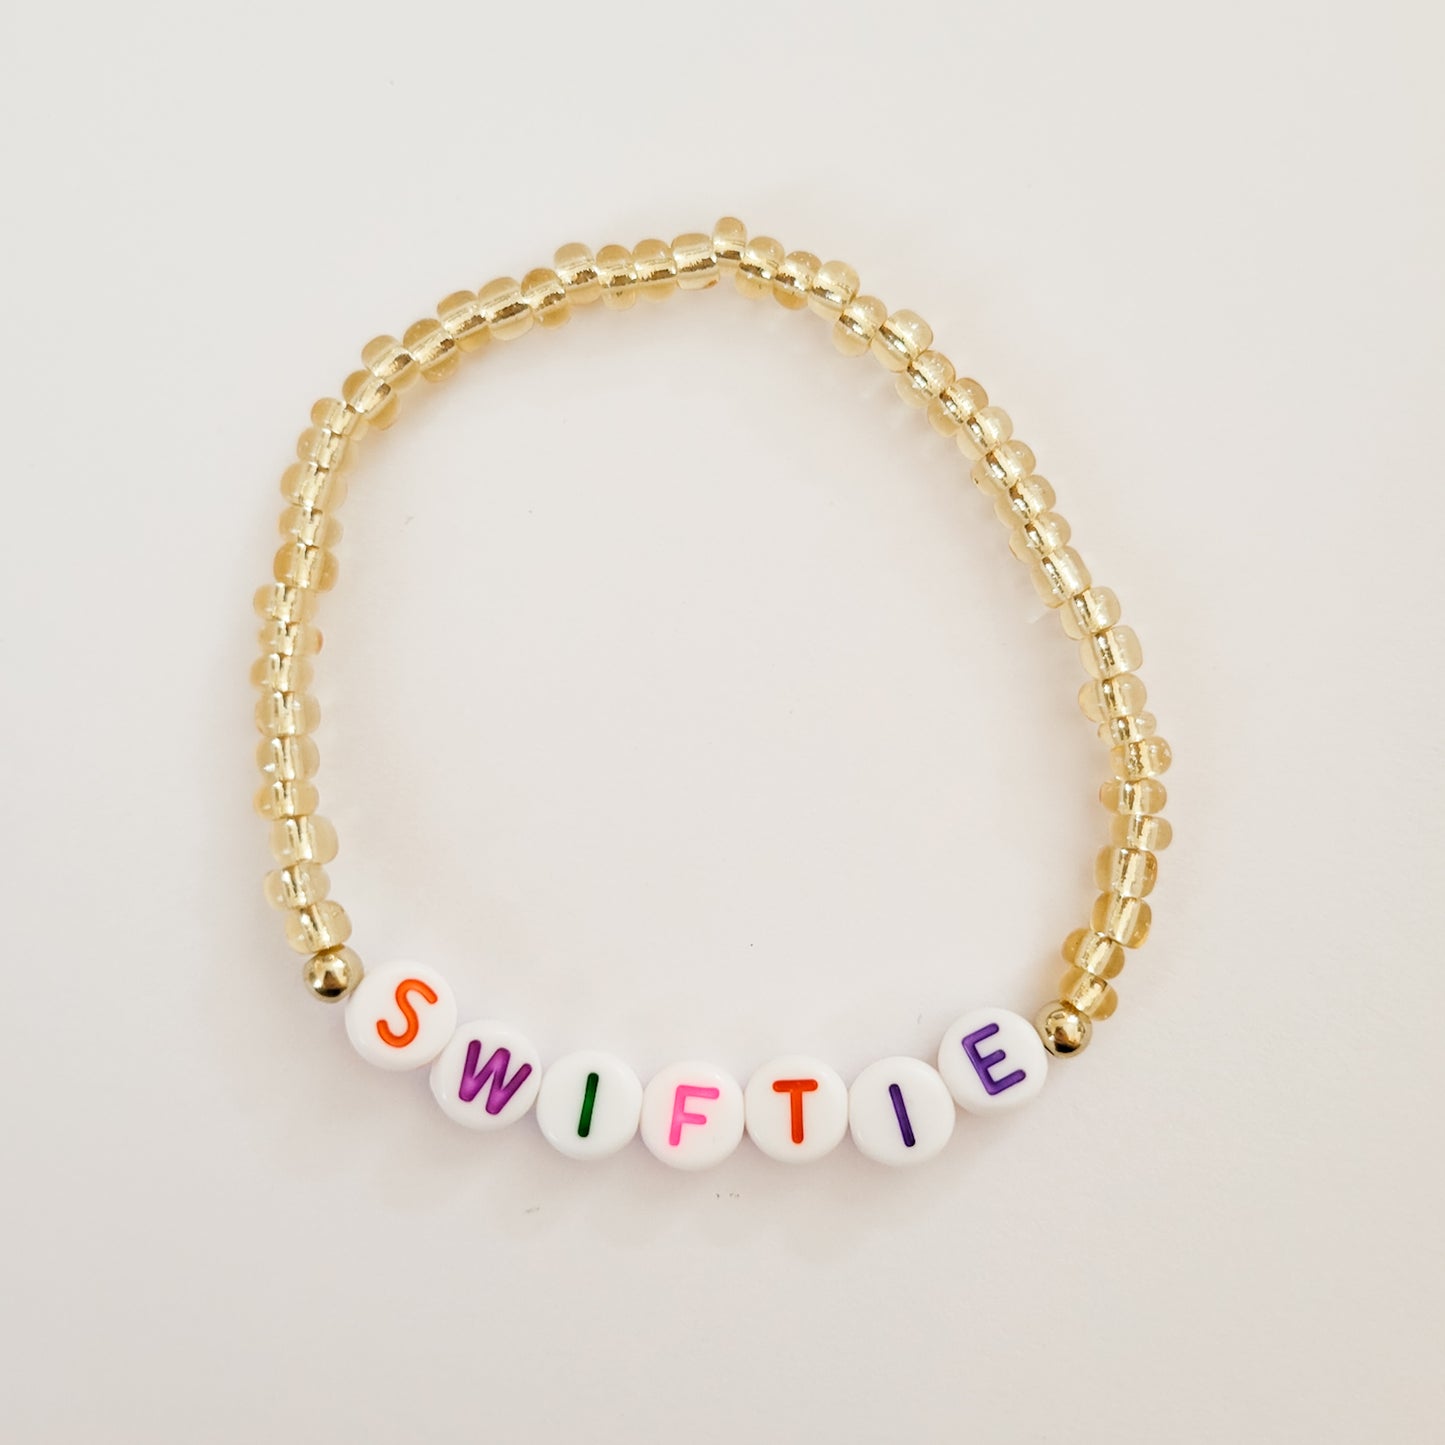 Swiftie Beaded Stretch Bracelet